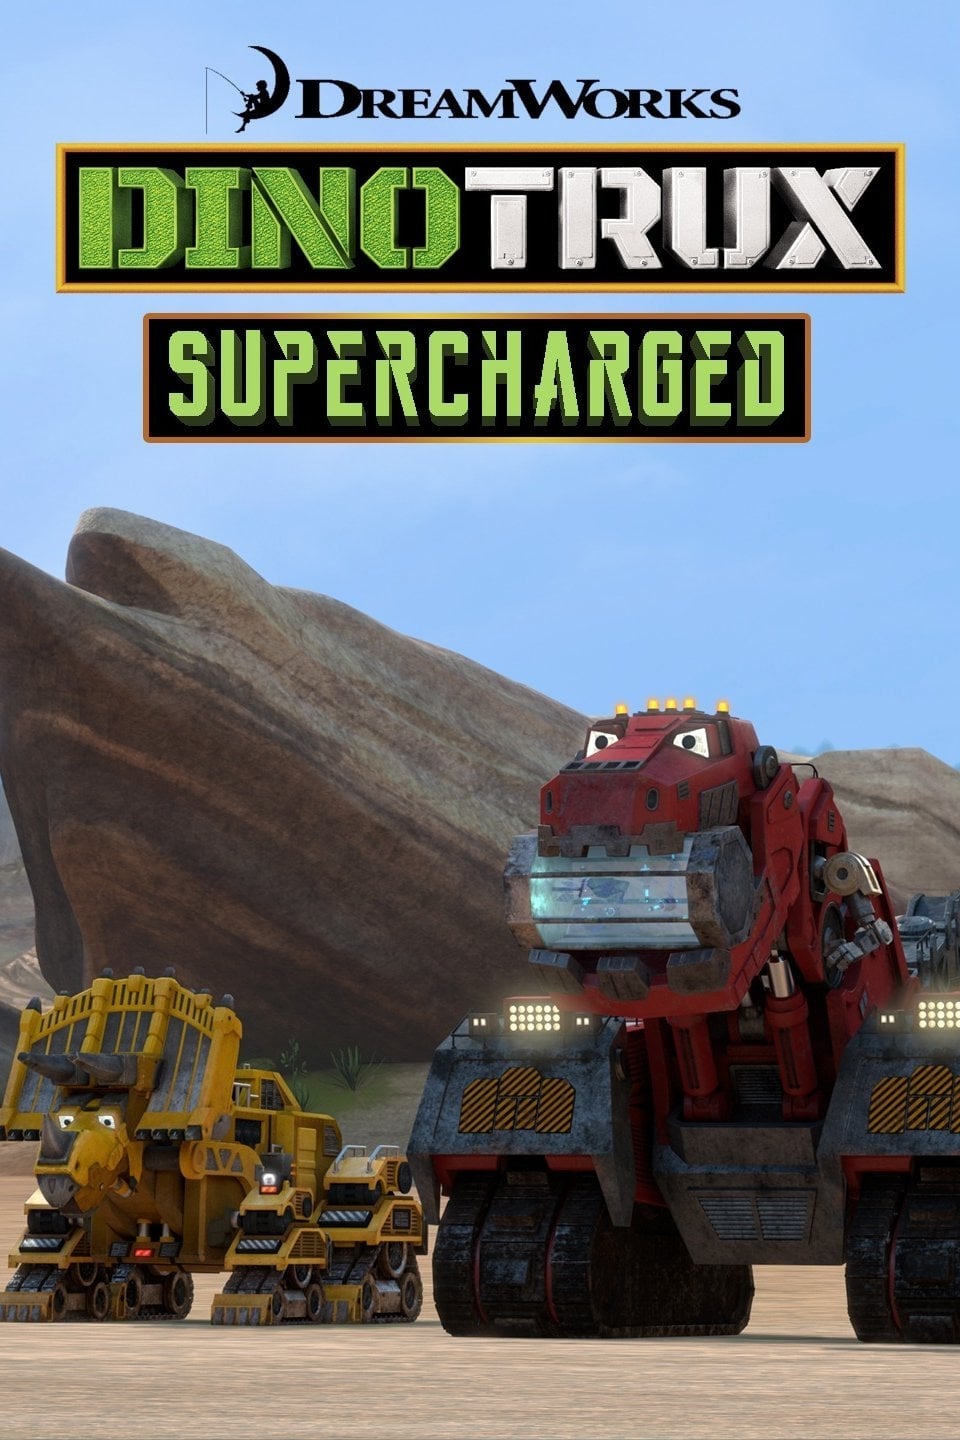 Les saisons de Dinotrux Superboostés sont-elles disponibles sur Netflix ou autre ?